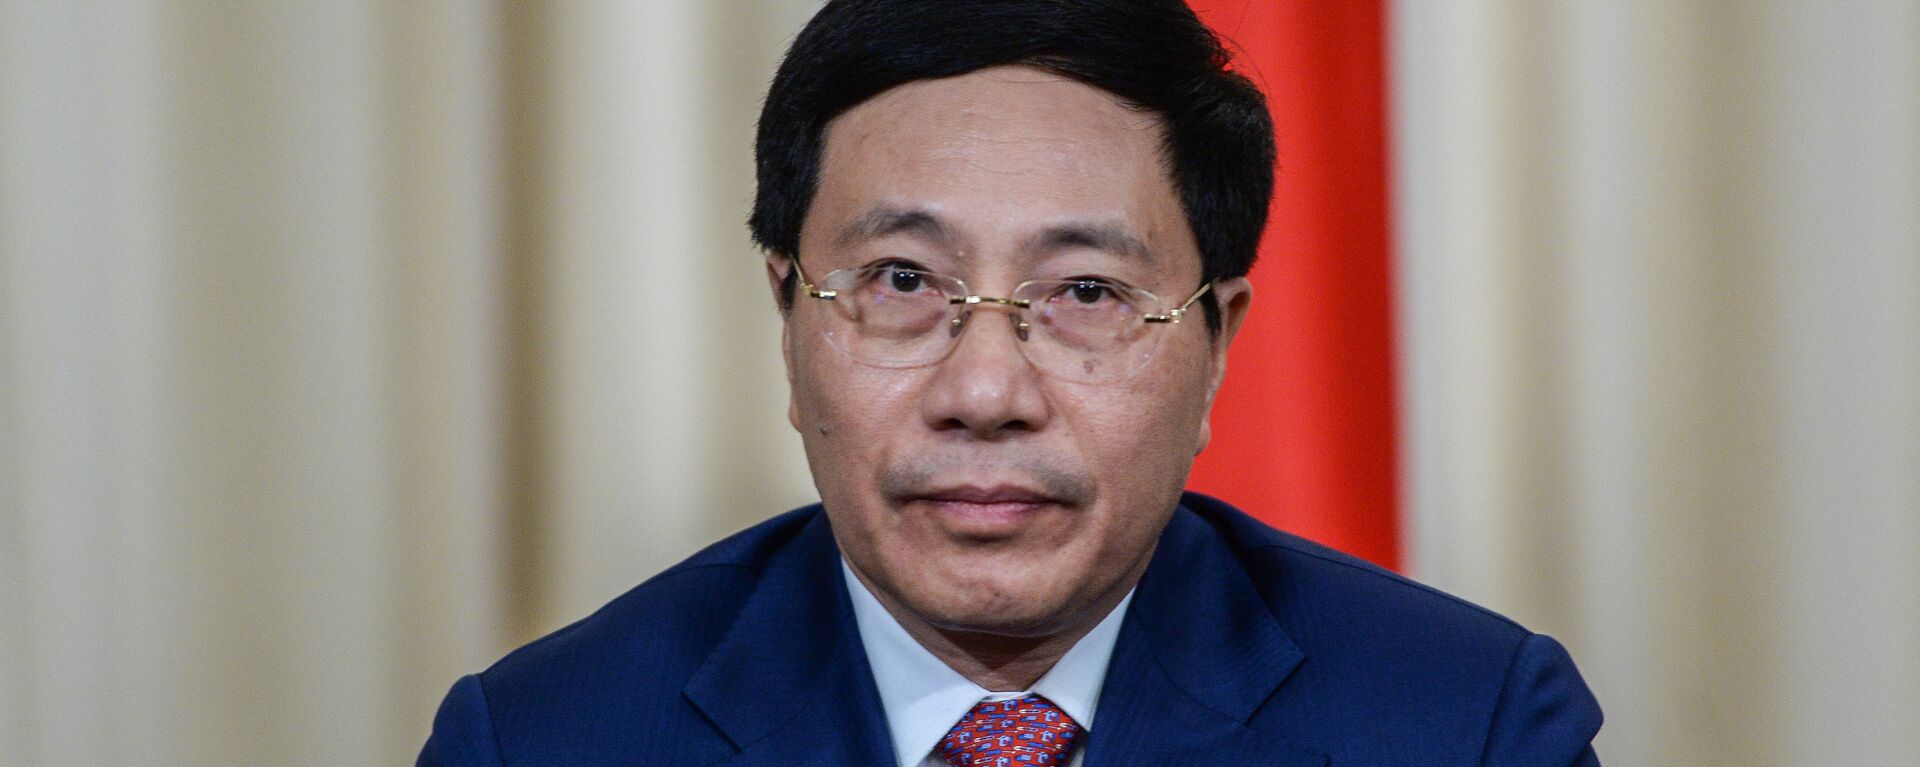 Bộ trưởng Ngoại giao Phạm Bình Minh - Sputnik Việt Nam, 1920, 24.11.2016